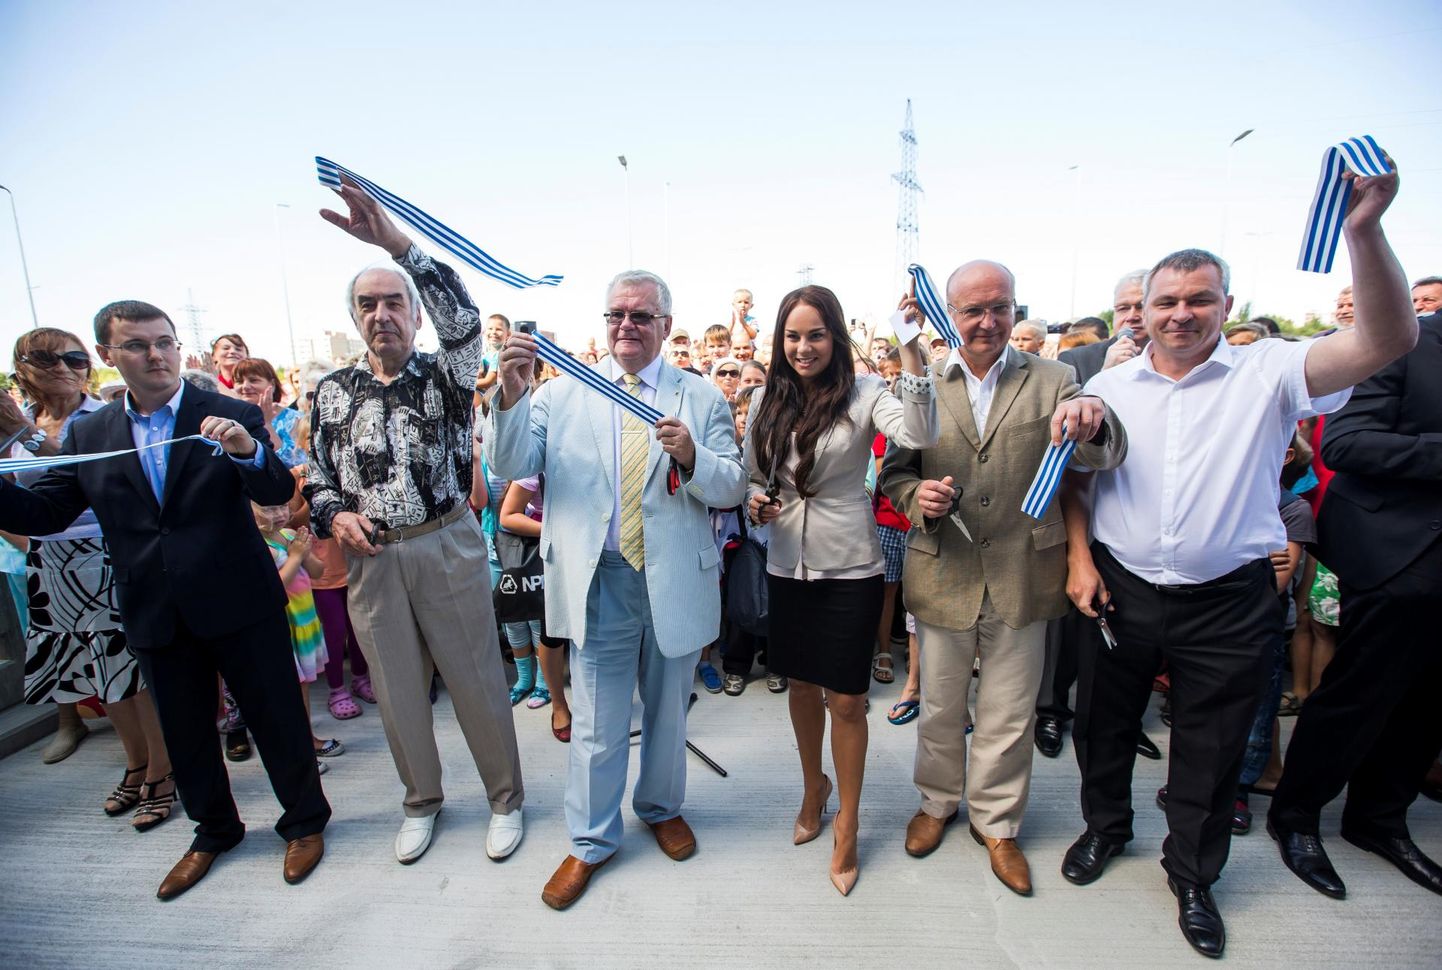 Открытие ледового холла Тондираба в 2014 году. Рядом с мэром Эдгаром Сависааром бывшая фигуристка Елена Глебова и конькобежец-олимпиец Антс Антсон.